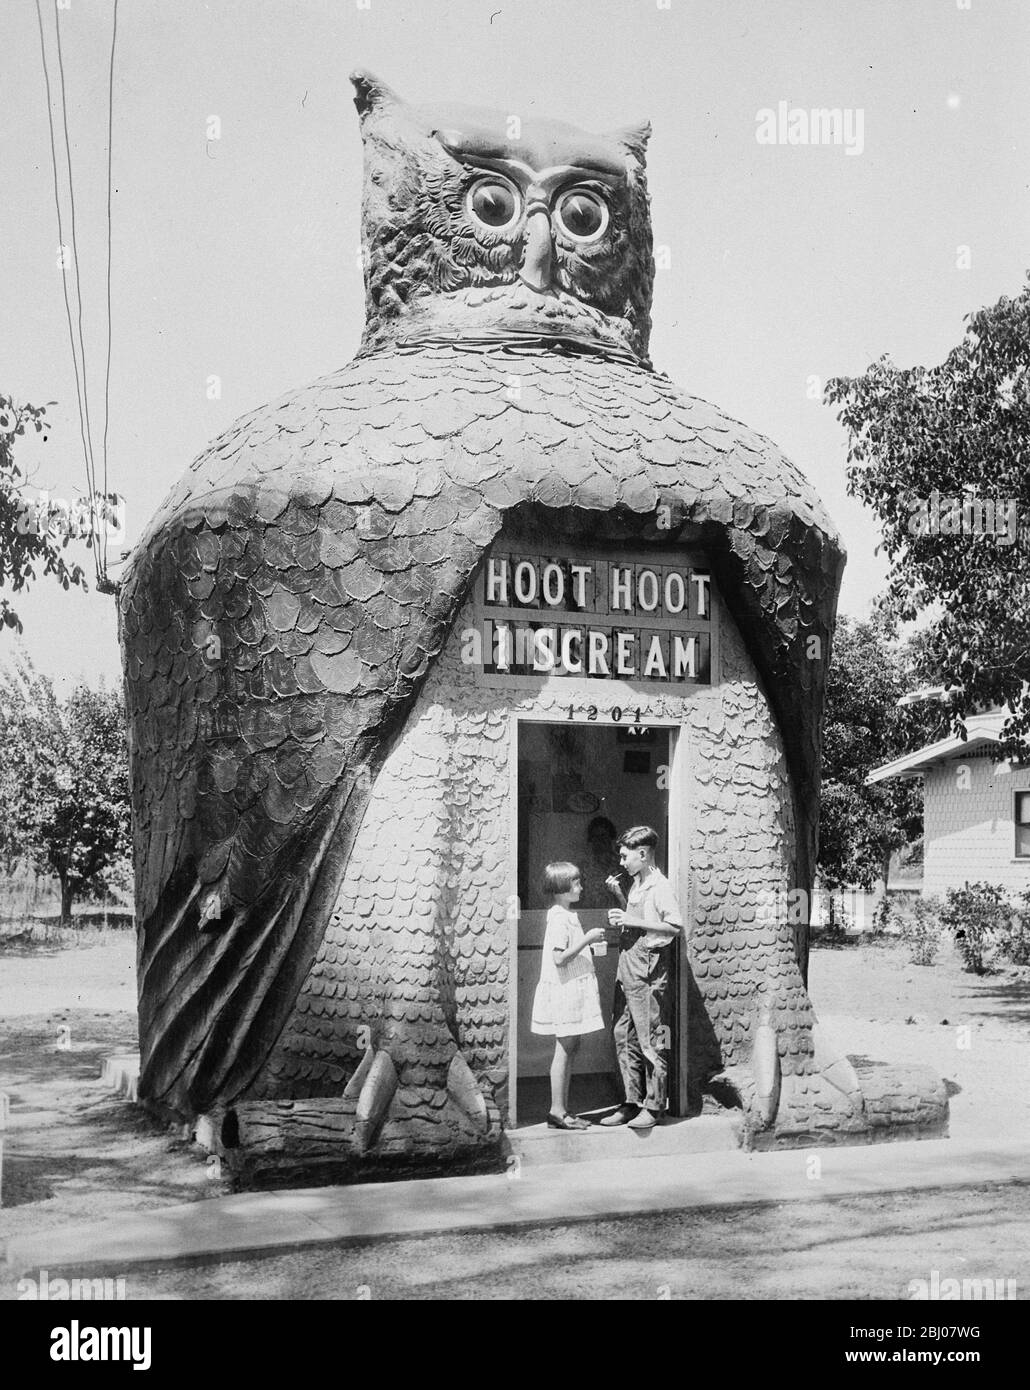 In una città di case da incubo . - immagine di Los Angeles che mostra un negozio di gelato modellato come un gufo e chiamato " Hoot Hoot Hoot i Scream " - 17 maggio 1928 Foto Stock